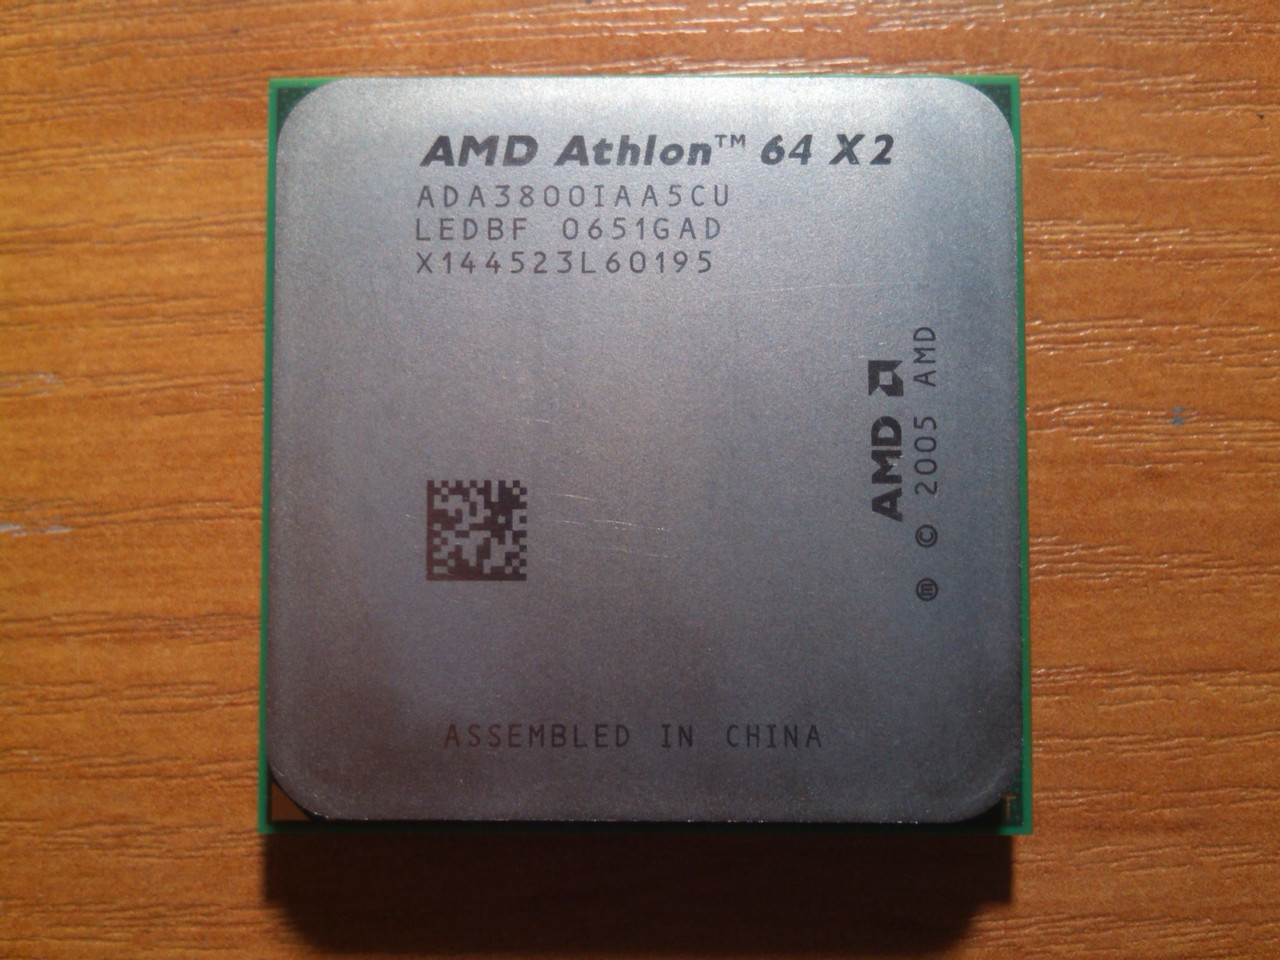 Athlon x2 сокет. AMD Athlon 64 x2 3800+. AMD Athlon 64 x2 ad04200iaa5cu. Системный блок AMD Athlon 64 x2. AMD x64.